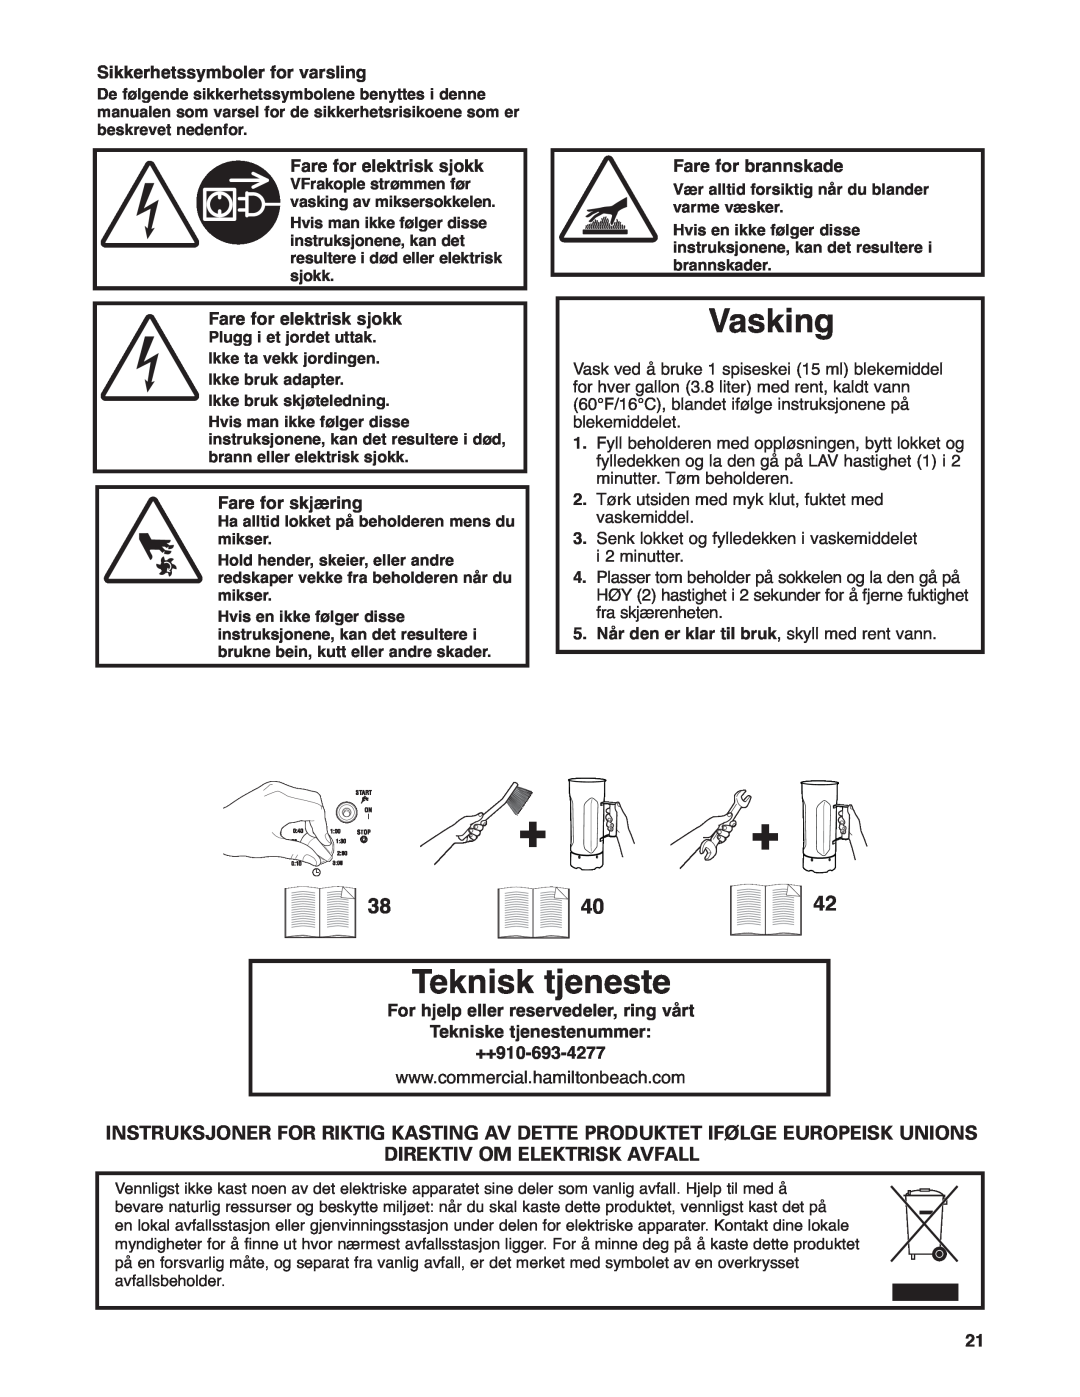 Hamilton Beach HBF400 Vasking, Teknisk tjeneste, Direktiv Om Elektrisk Avfall, Sikkerhetssymboler for varsling 